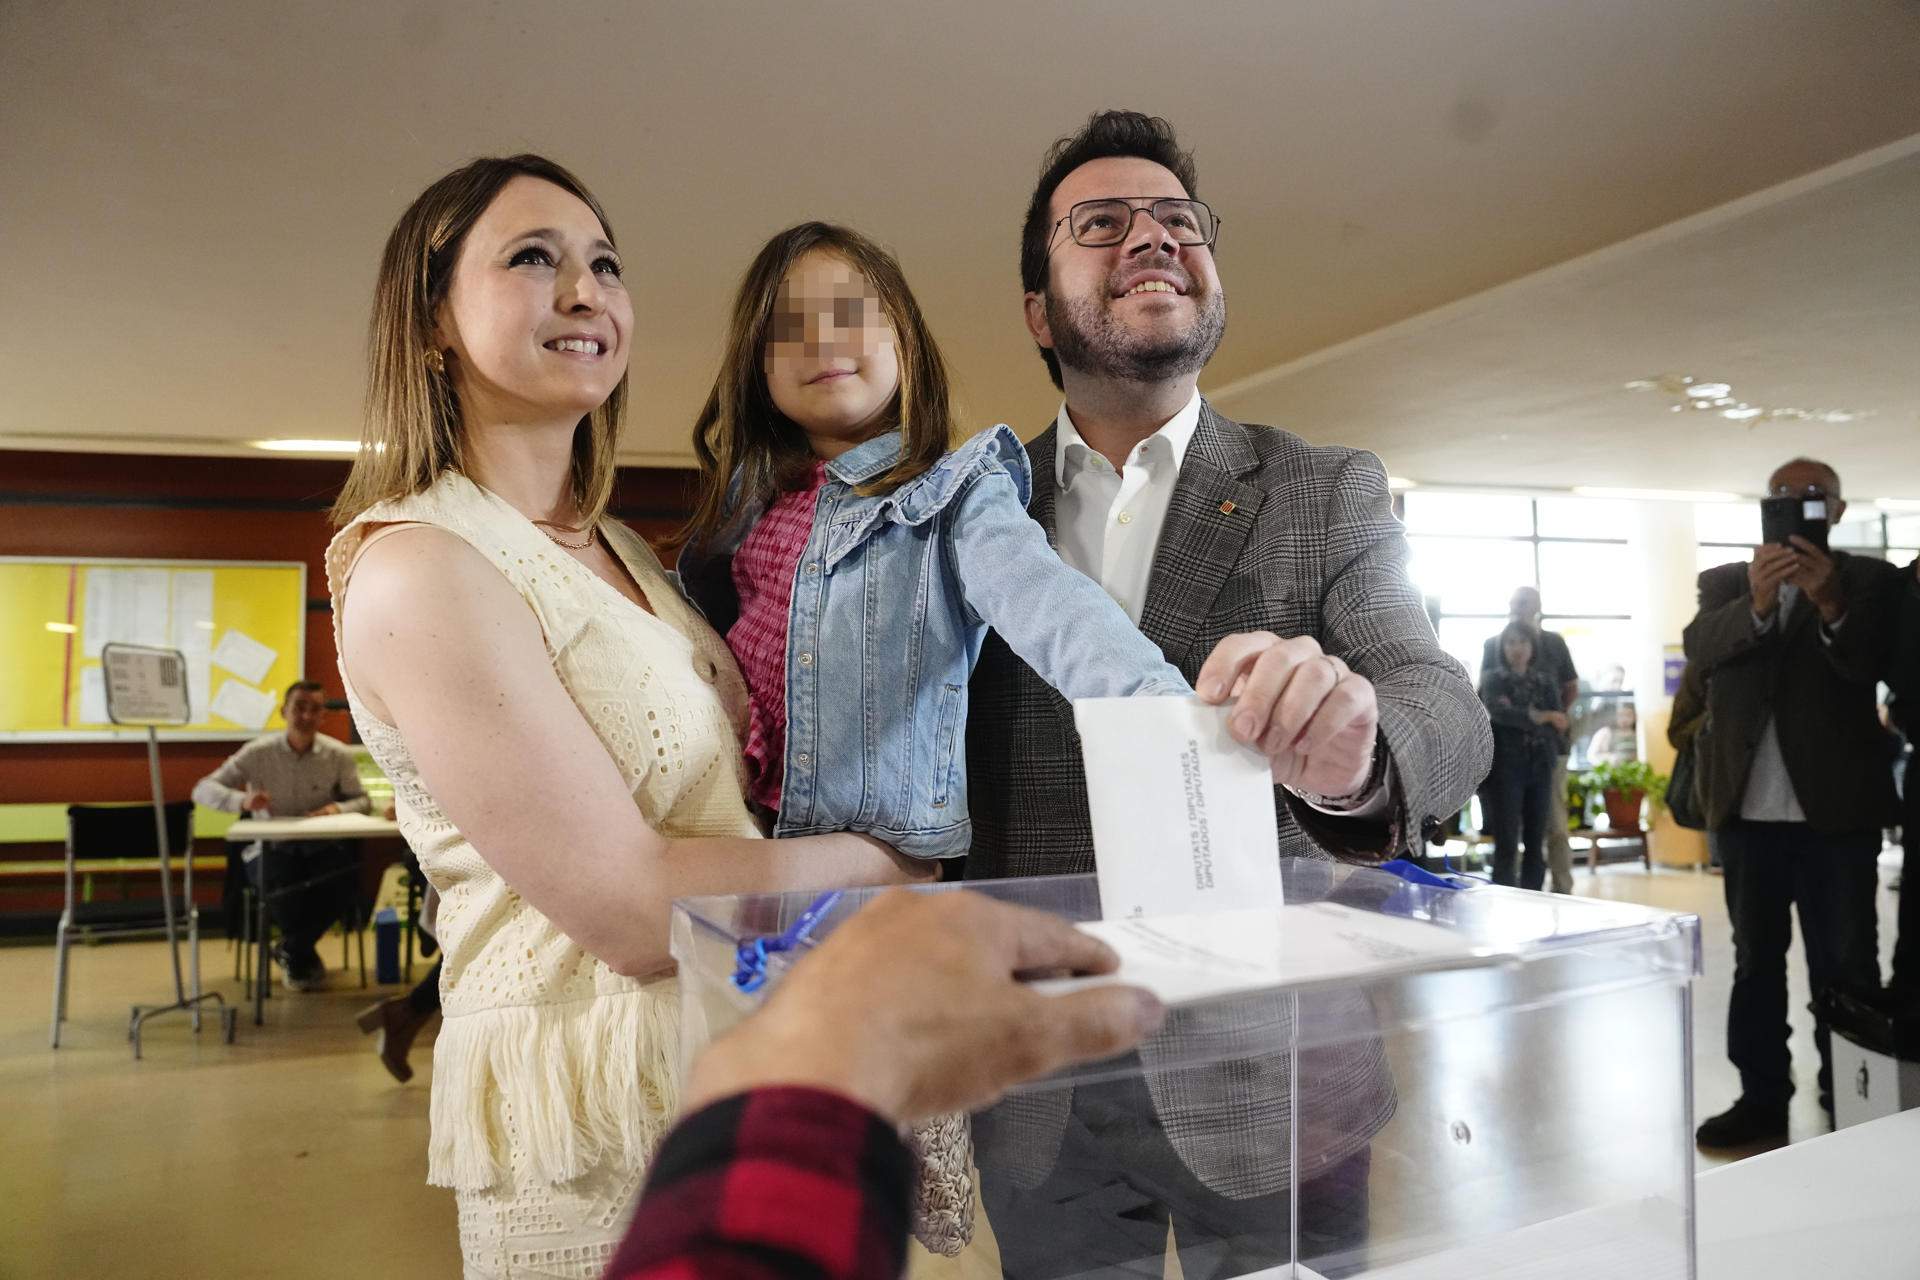 Pere Aragonès exigeix restaurar Rodalies per garantir el dret al vot i espera una “altíssima participació"